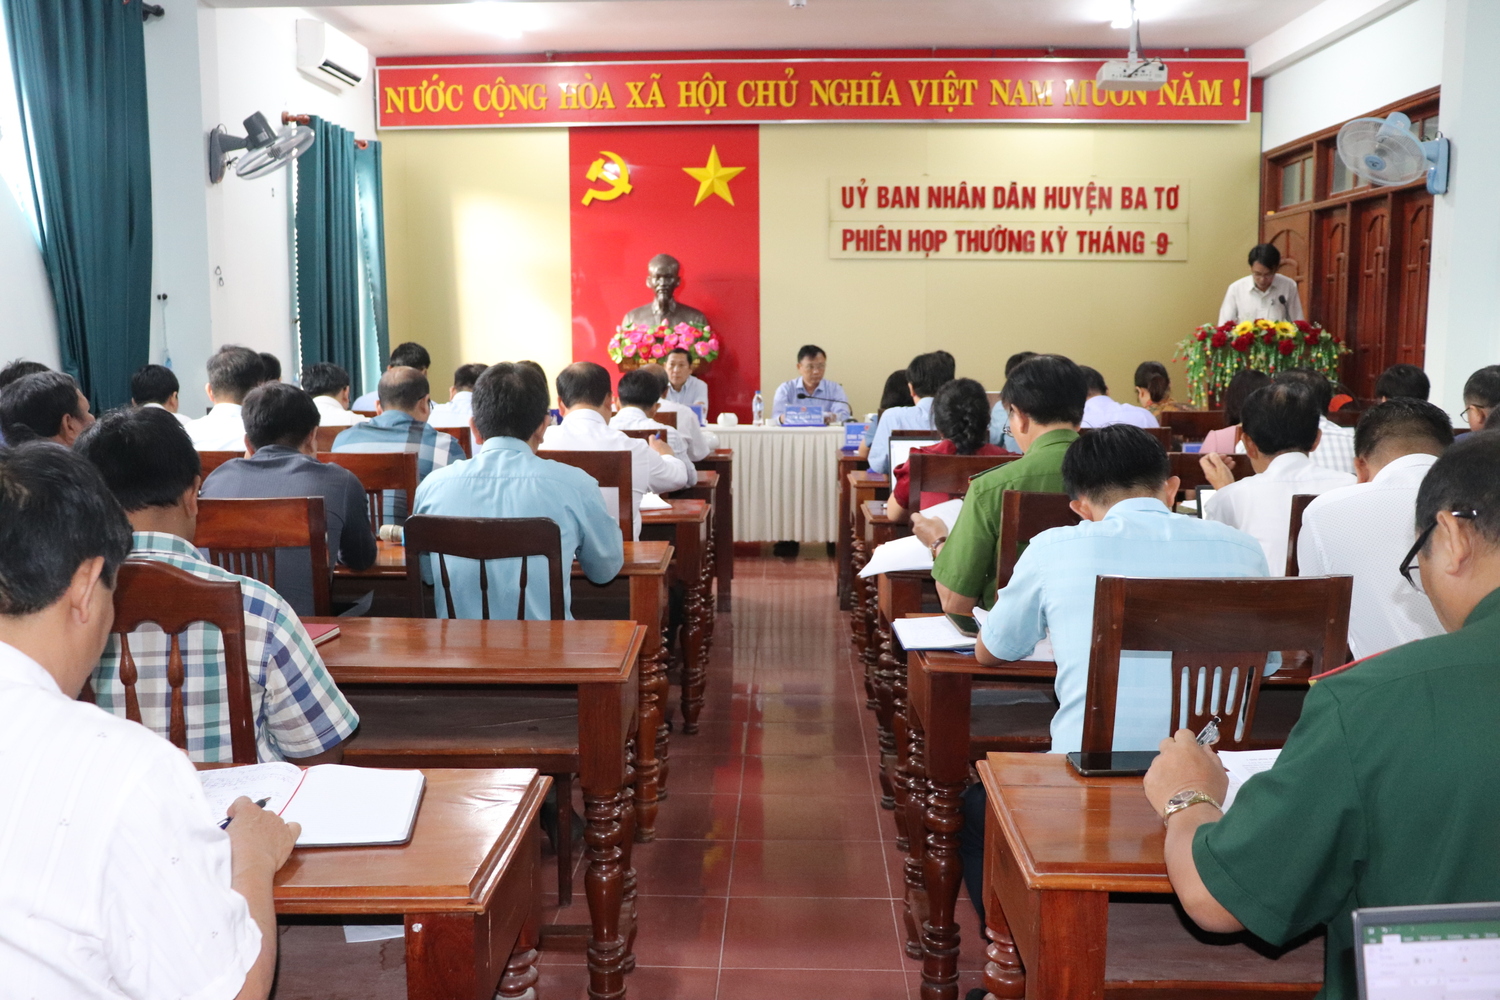 UBND huyện Ba Tơ tổ chức phiên họp thường kỳ tháng 9